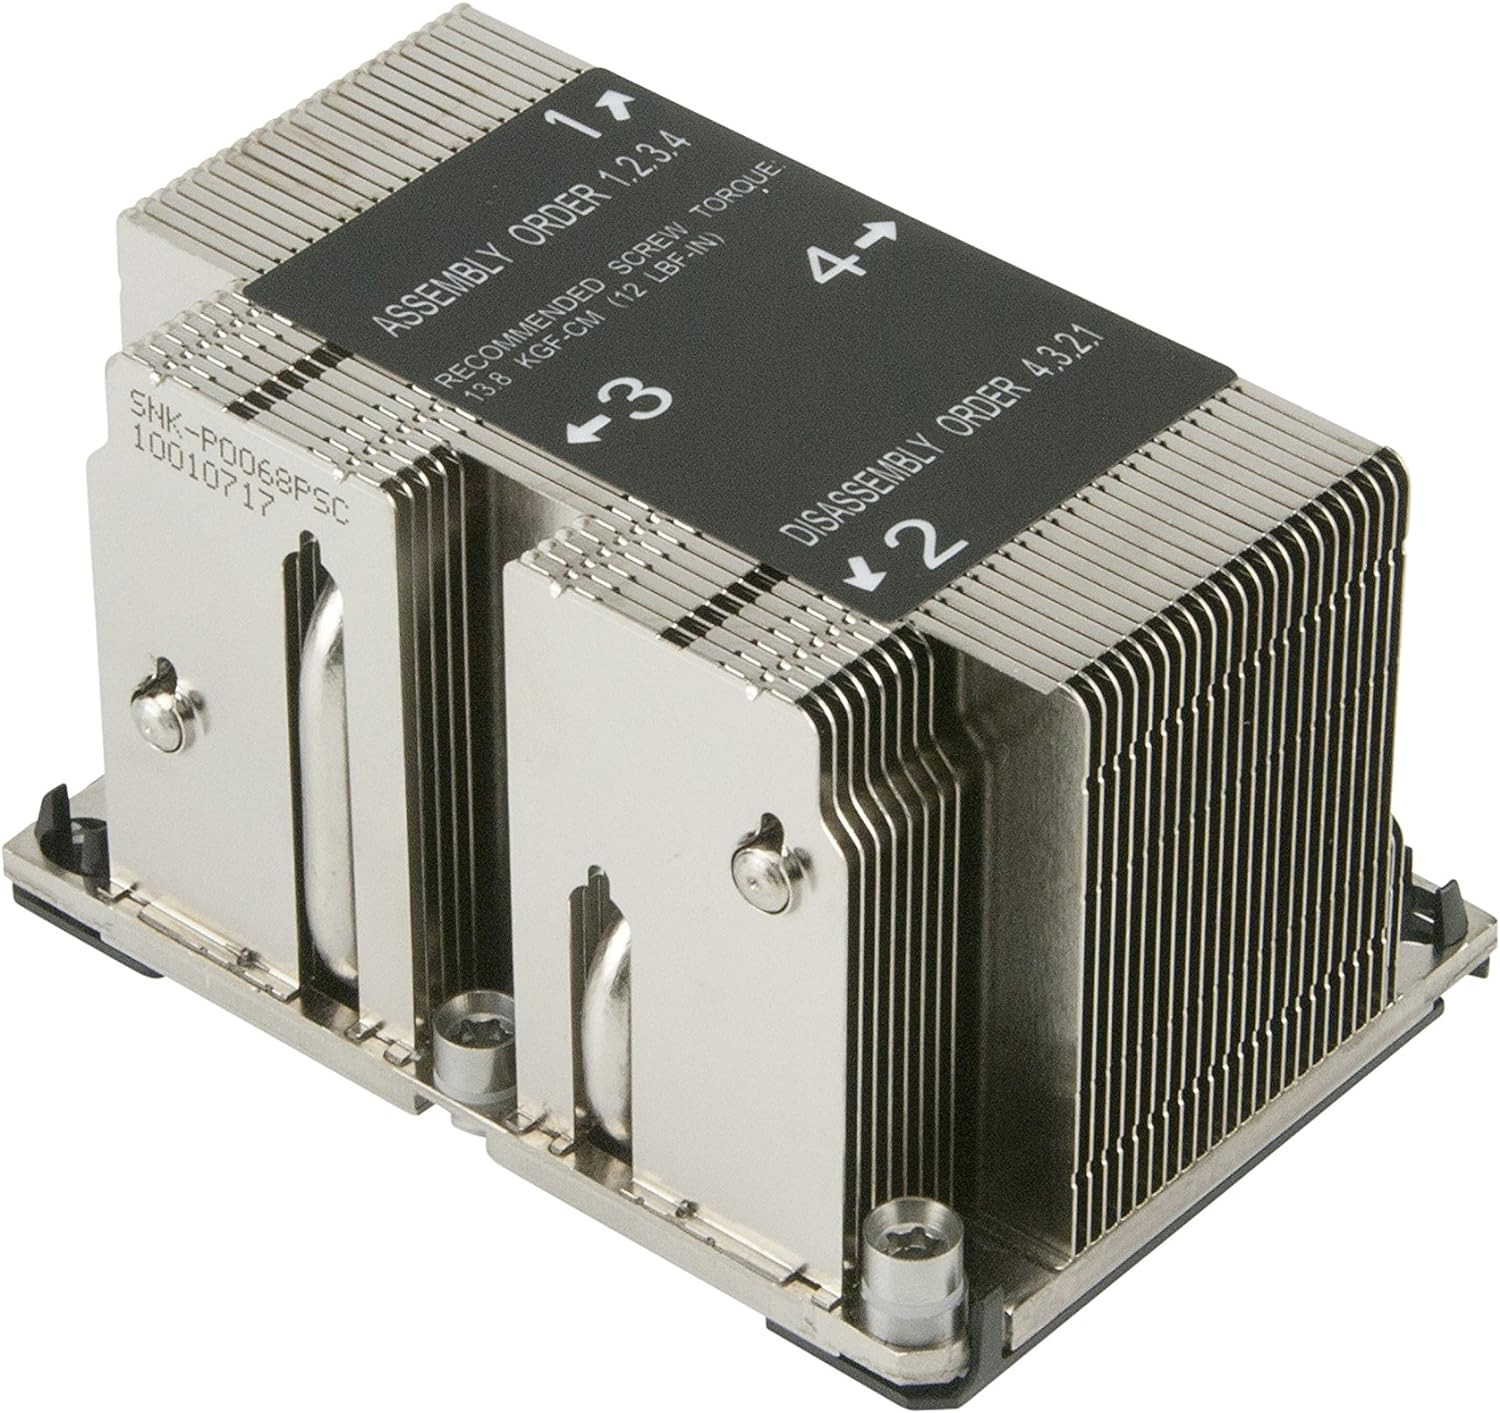 SNK-P0068PSC LGA 3647-0 2U &UP X11 Purley Platform CPU Heat Sink